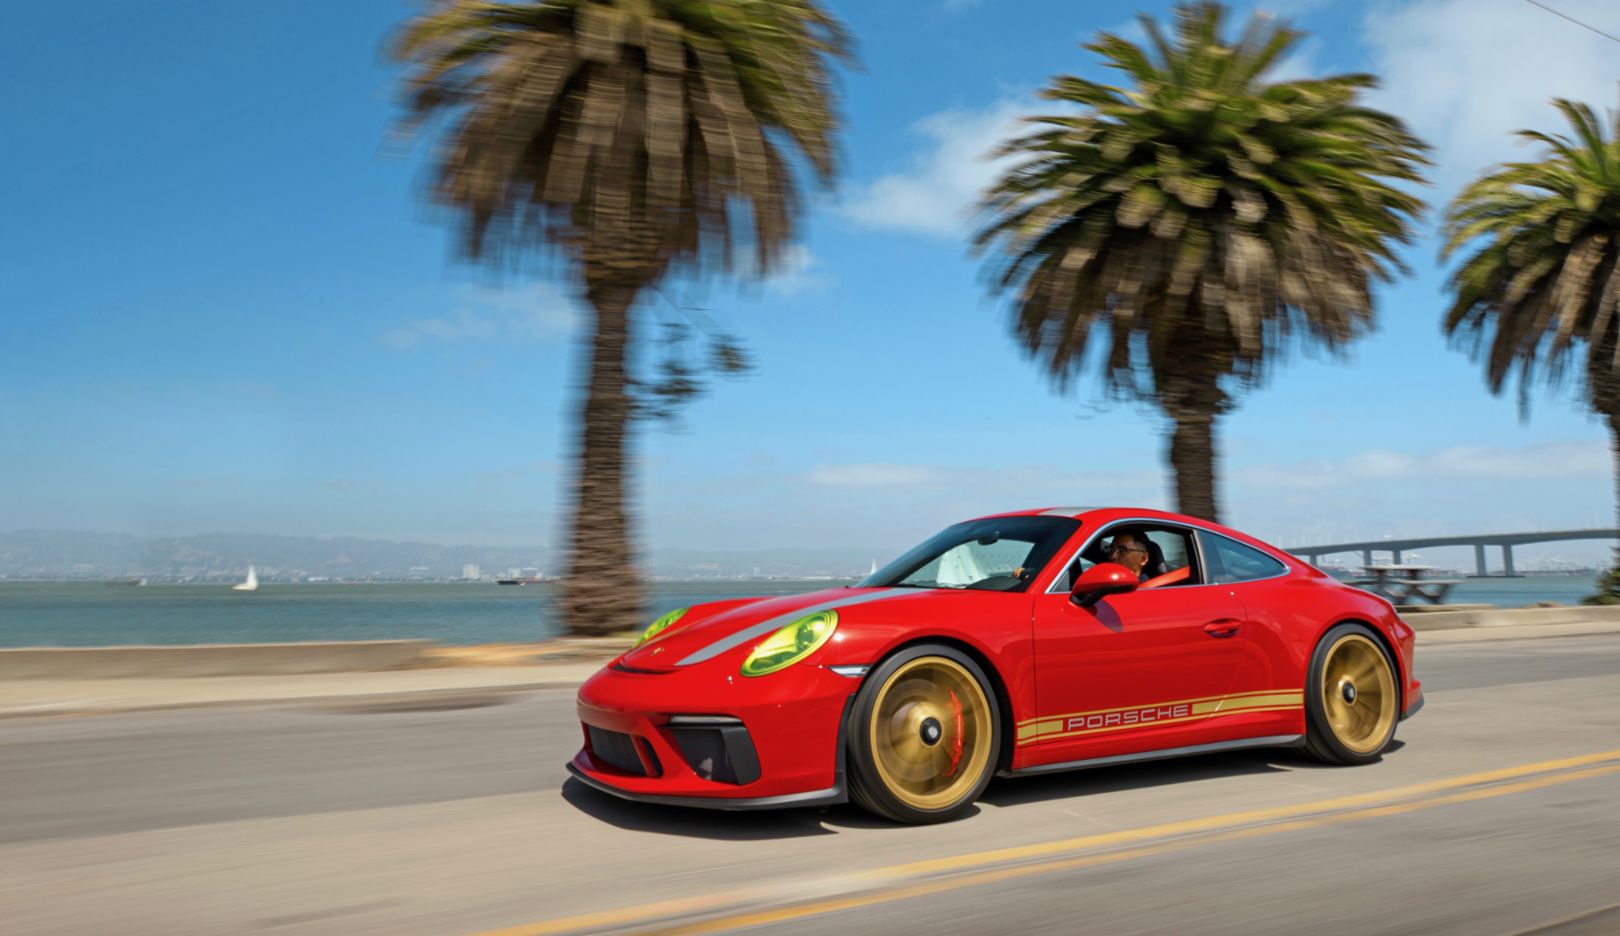 2018년식 포르쉐 911 GT3 투어링도 이제 다니엘 컬렉션에 포함된다. 독특한 도장의 스포츠카는 샌프란시스코 거리에서 바로 눈에 띈다.